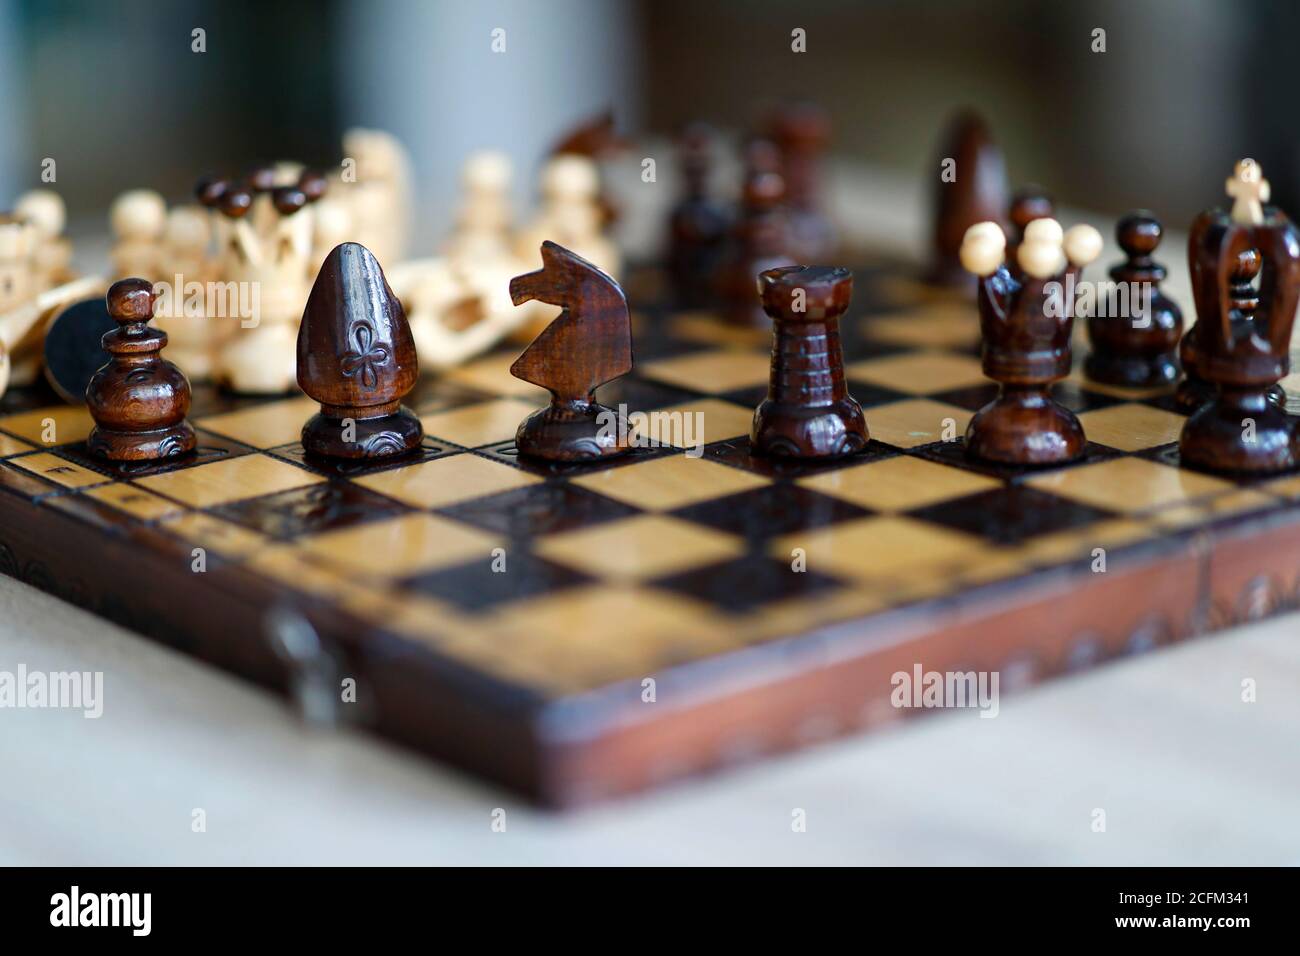 Pezzi di scacchi su tavola di gioco in legno. I pezzi includono la pedina, il re, la regina, il vescovo, il cavaliere e il rook Foto Stock